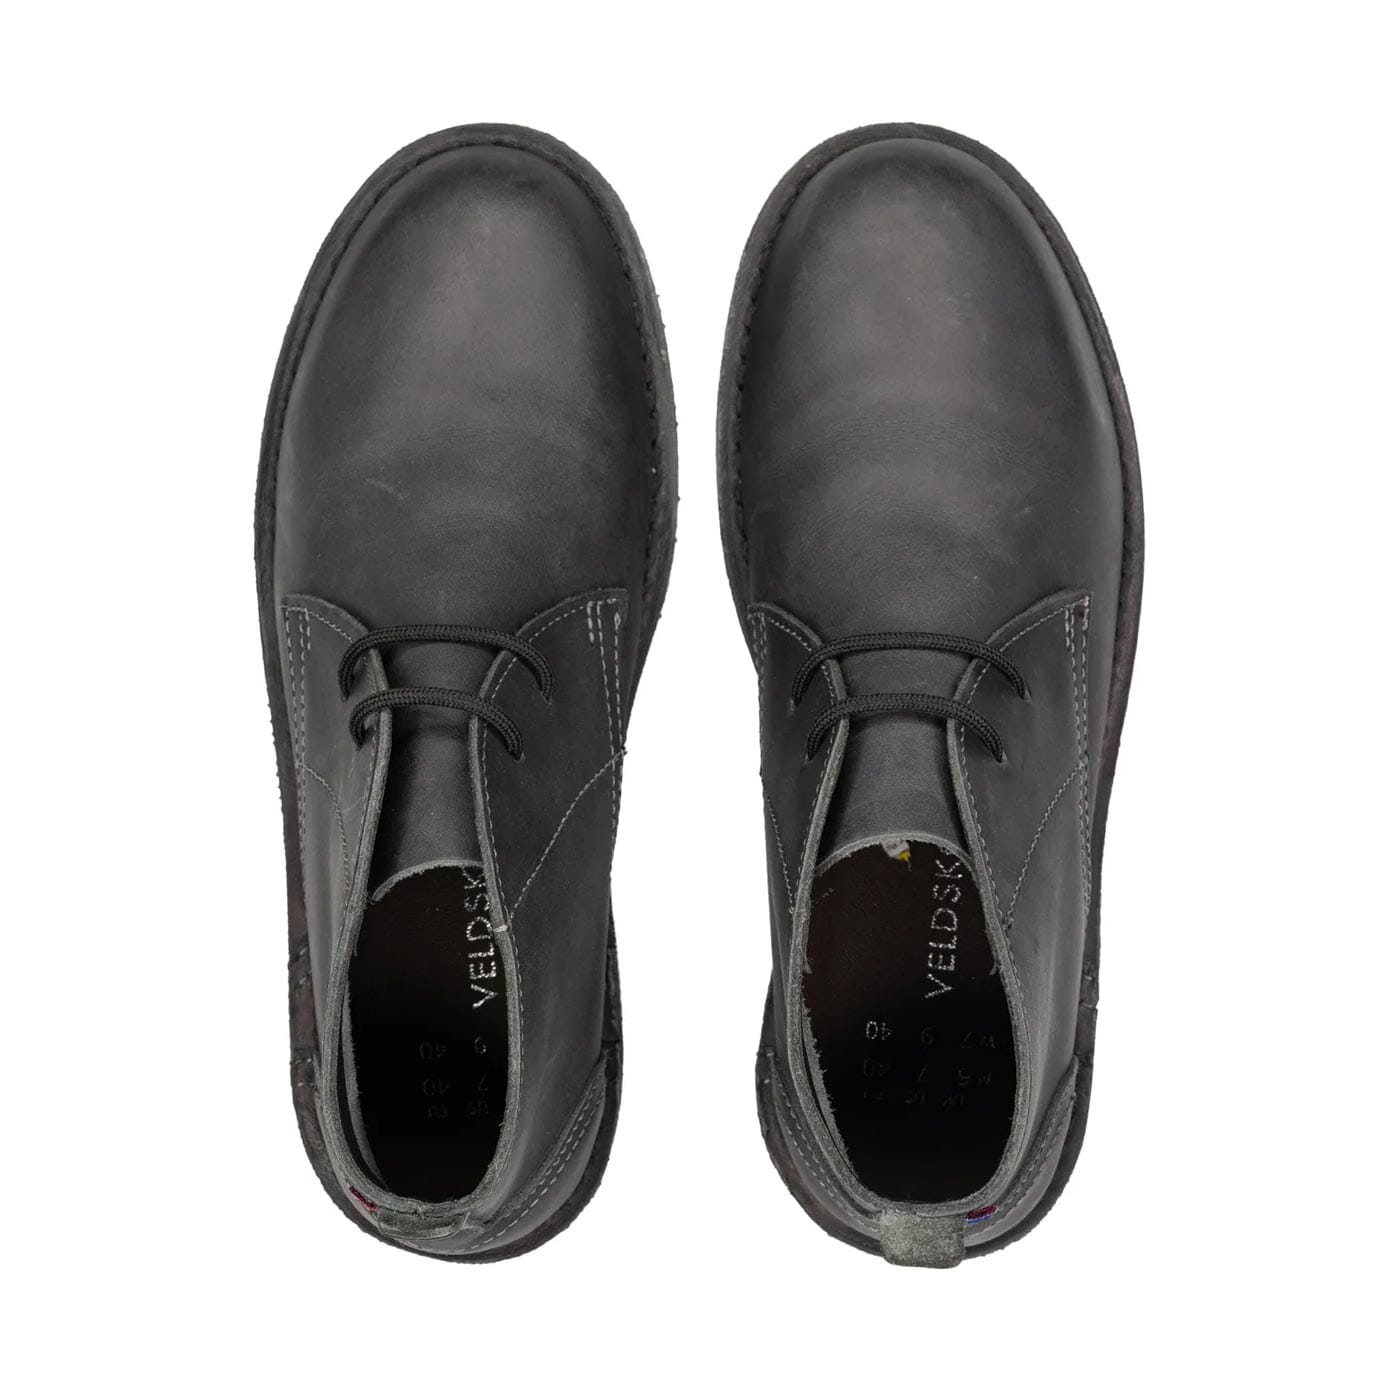 Veldskoen Chukka Charcoal Leather Boot Shoes Veldskoen